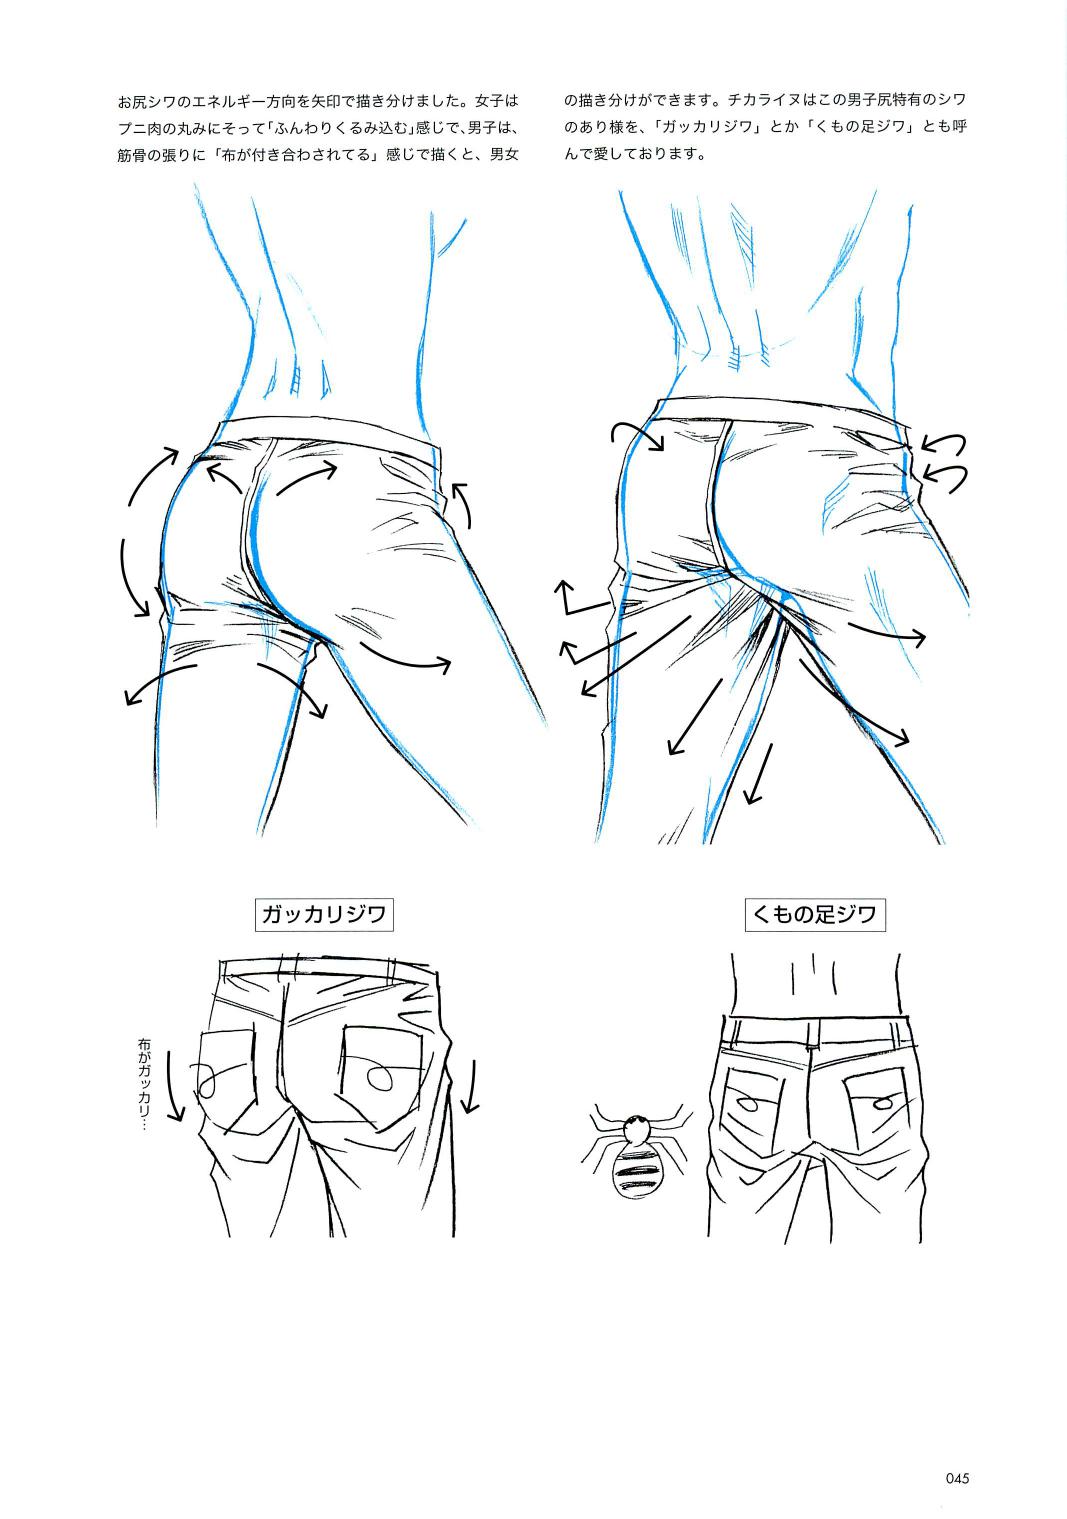 裤子褶皱与男性臀部画法要点